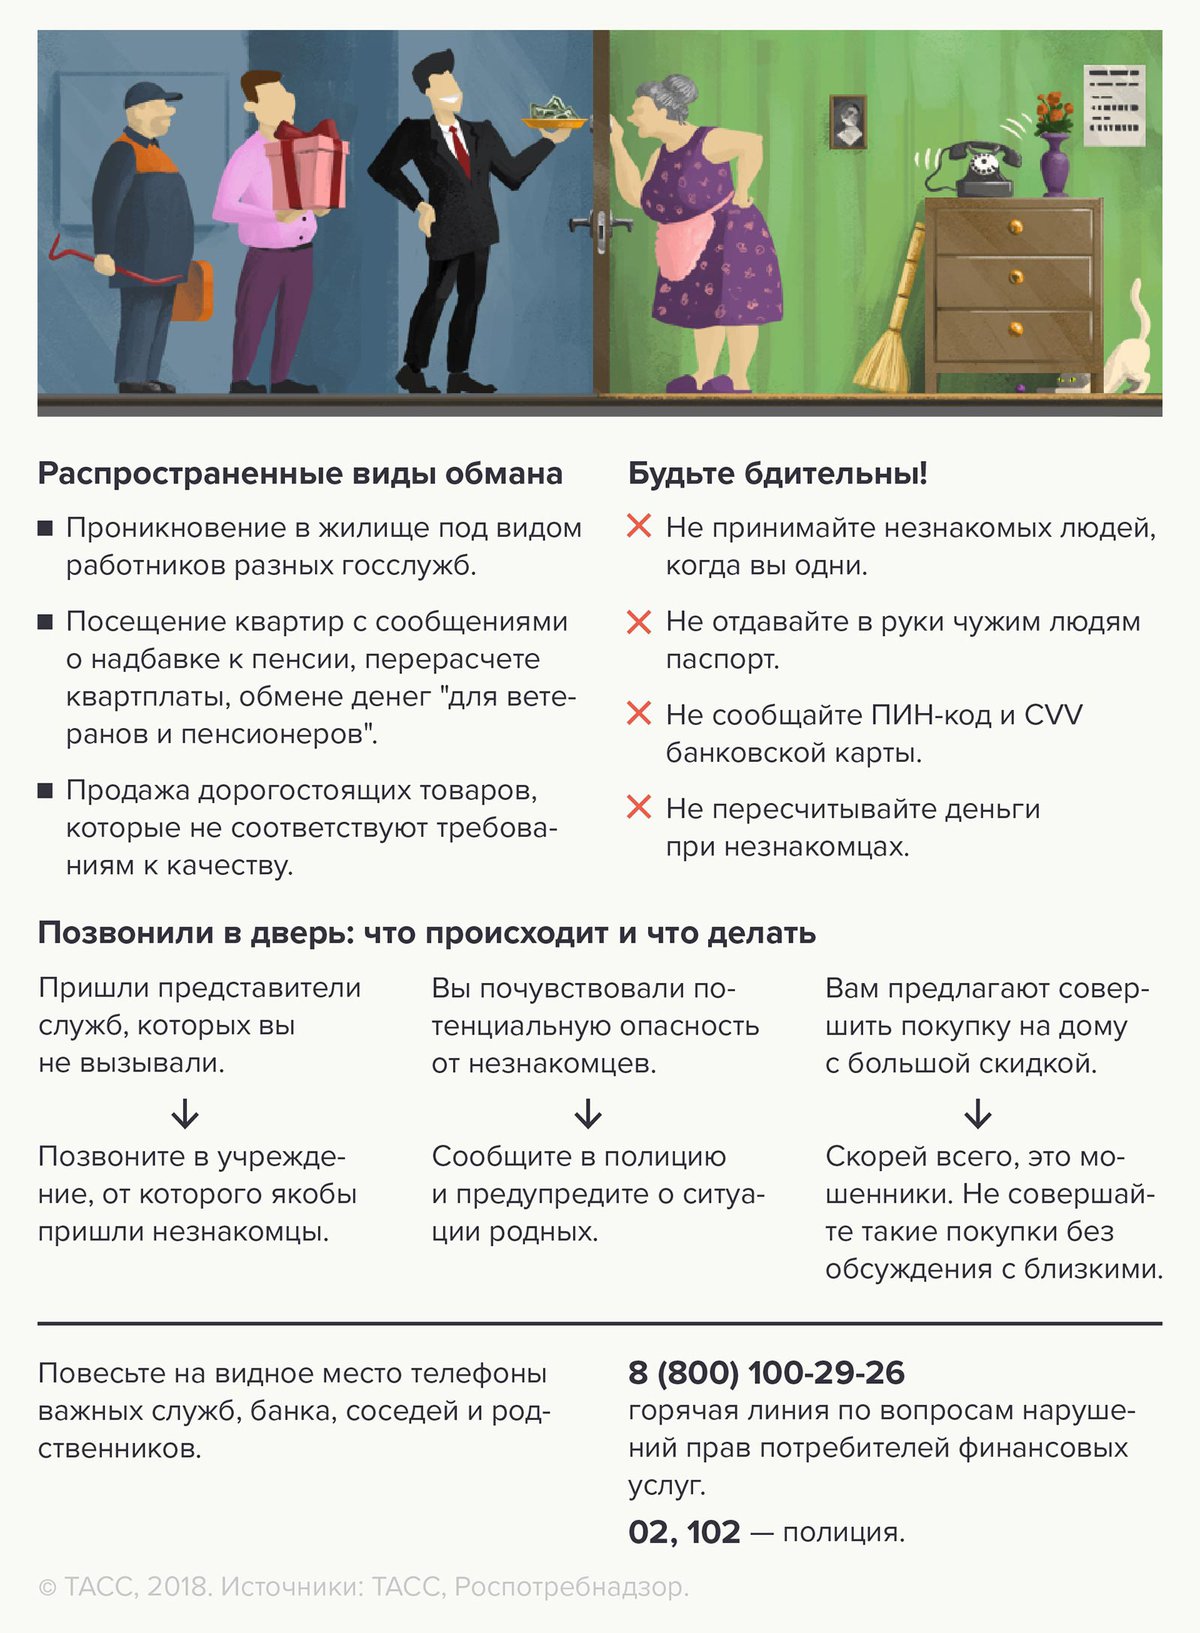 мошенники-тасс-роспотребнадзор-инфографика.jpg